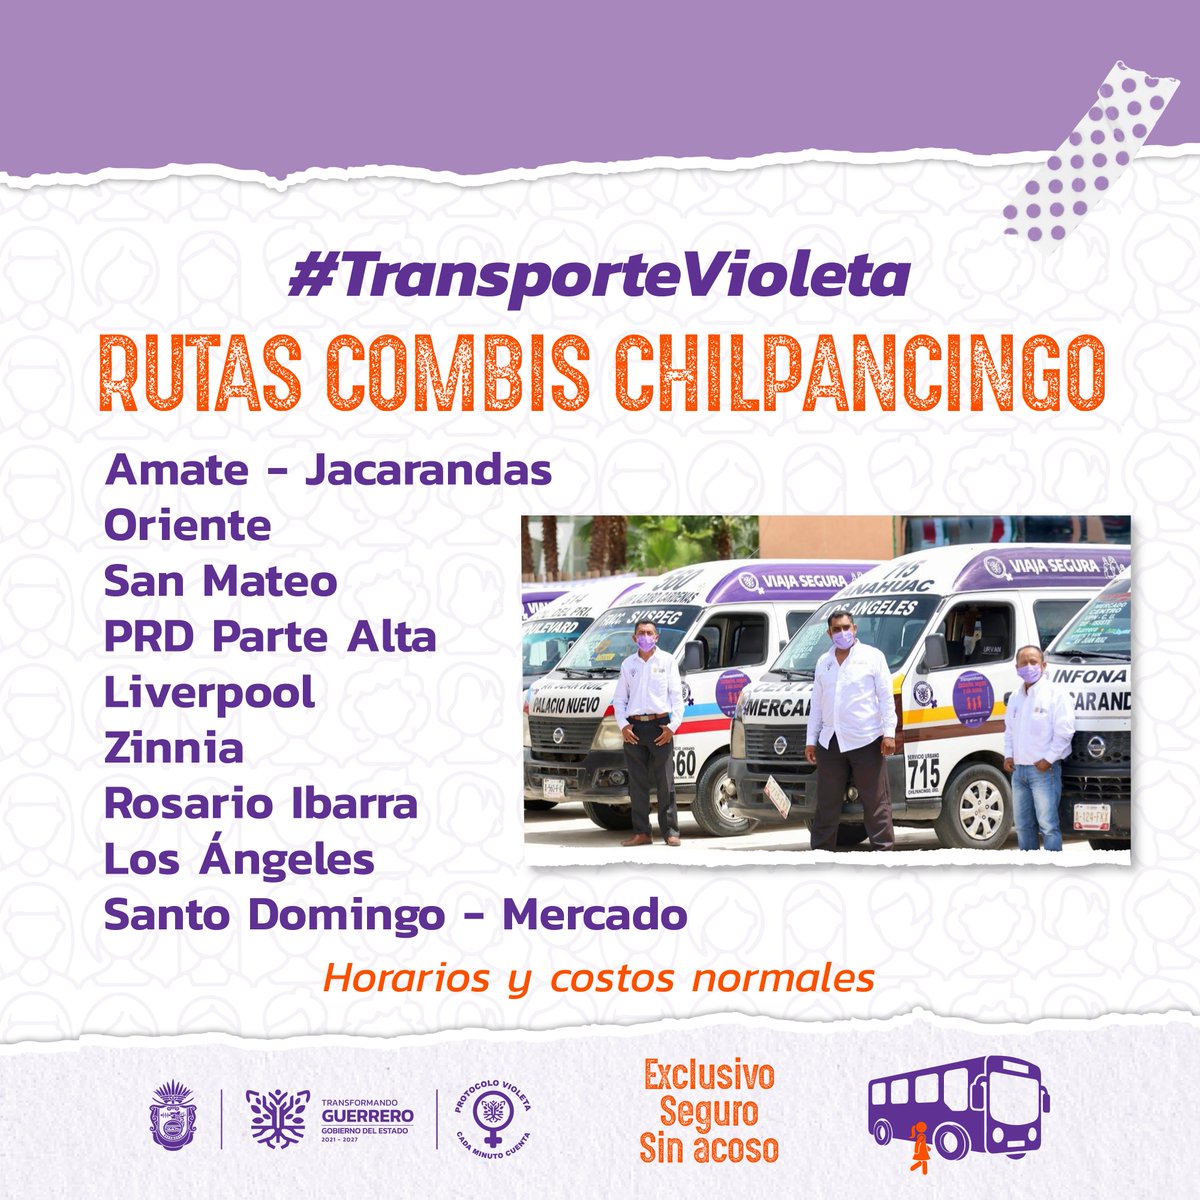 Conoce las rutas y modalidades de #TransporteVioleta en Acapulco y Chilpancingo. Recuerda que las unidades son exclusivas para niñas, mujeres y niños menores de 12 años; respetemos esta nueva forma de transporte que busca prevenir y erradicar el acoso sexual hacia las mujeres.